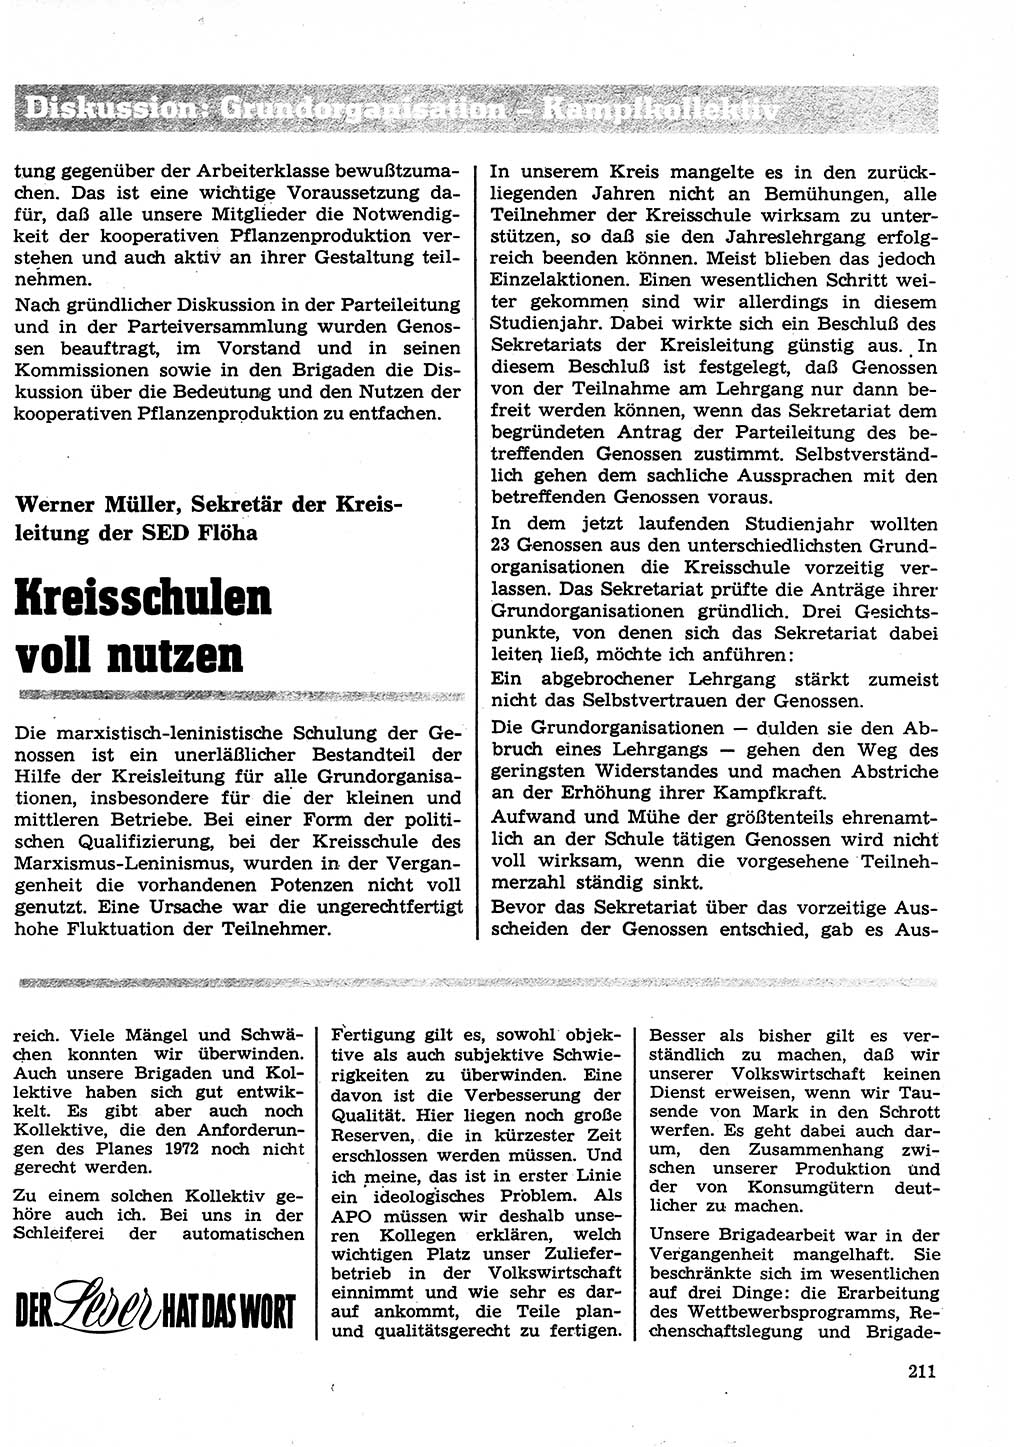 Neuer Weg (NW), Organ des Zentralkomitees (ZK) der SED (Sozialistische Einheitspartei Deutschlands) für Fragen des Parteilebens, 27. Jahrgang [Deutsche Demokratische Republik (DDR)] 1972, Seite 211 (NW ZK SED DDR 1972, S. 211)